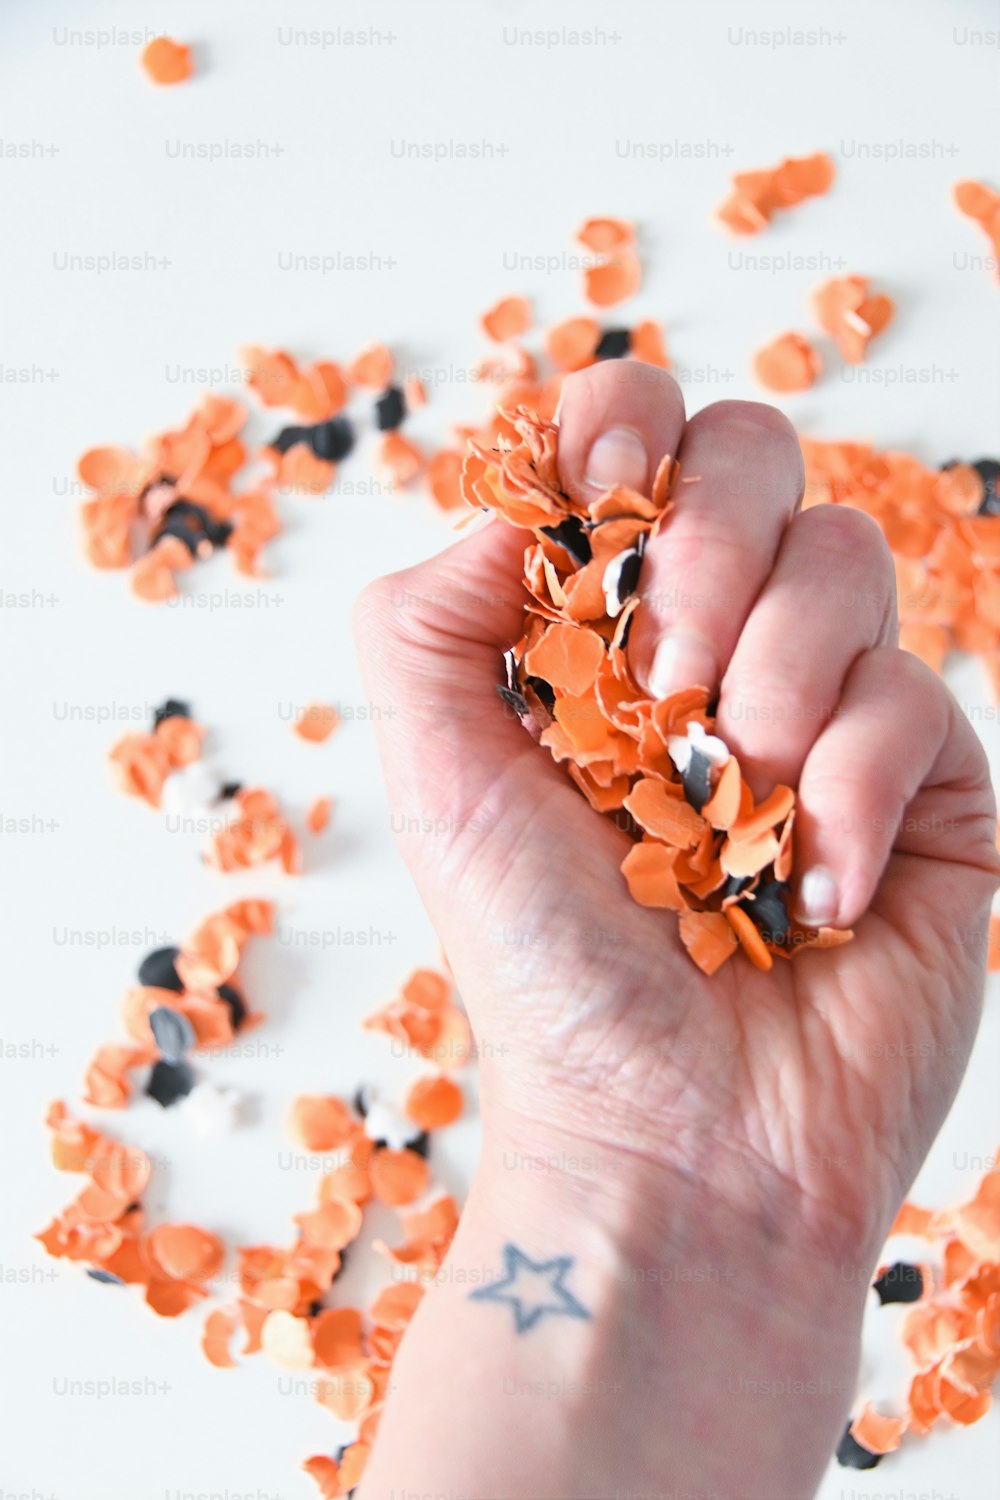 una mano che regge una manciata di coriandoli arancioni e neri